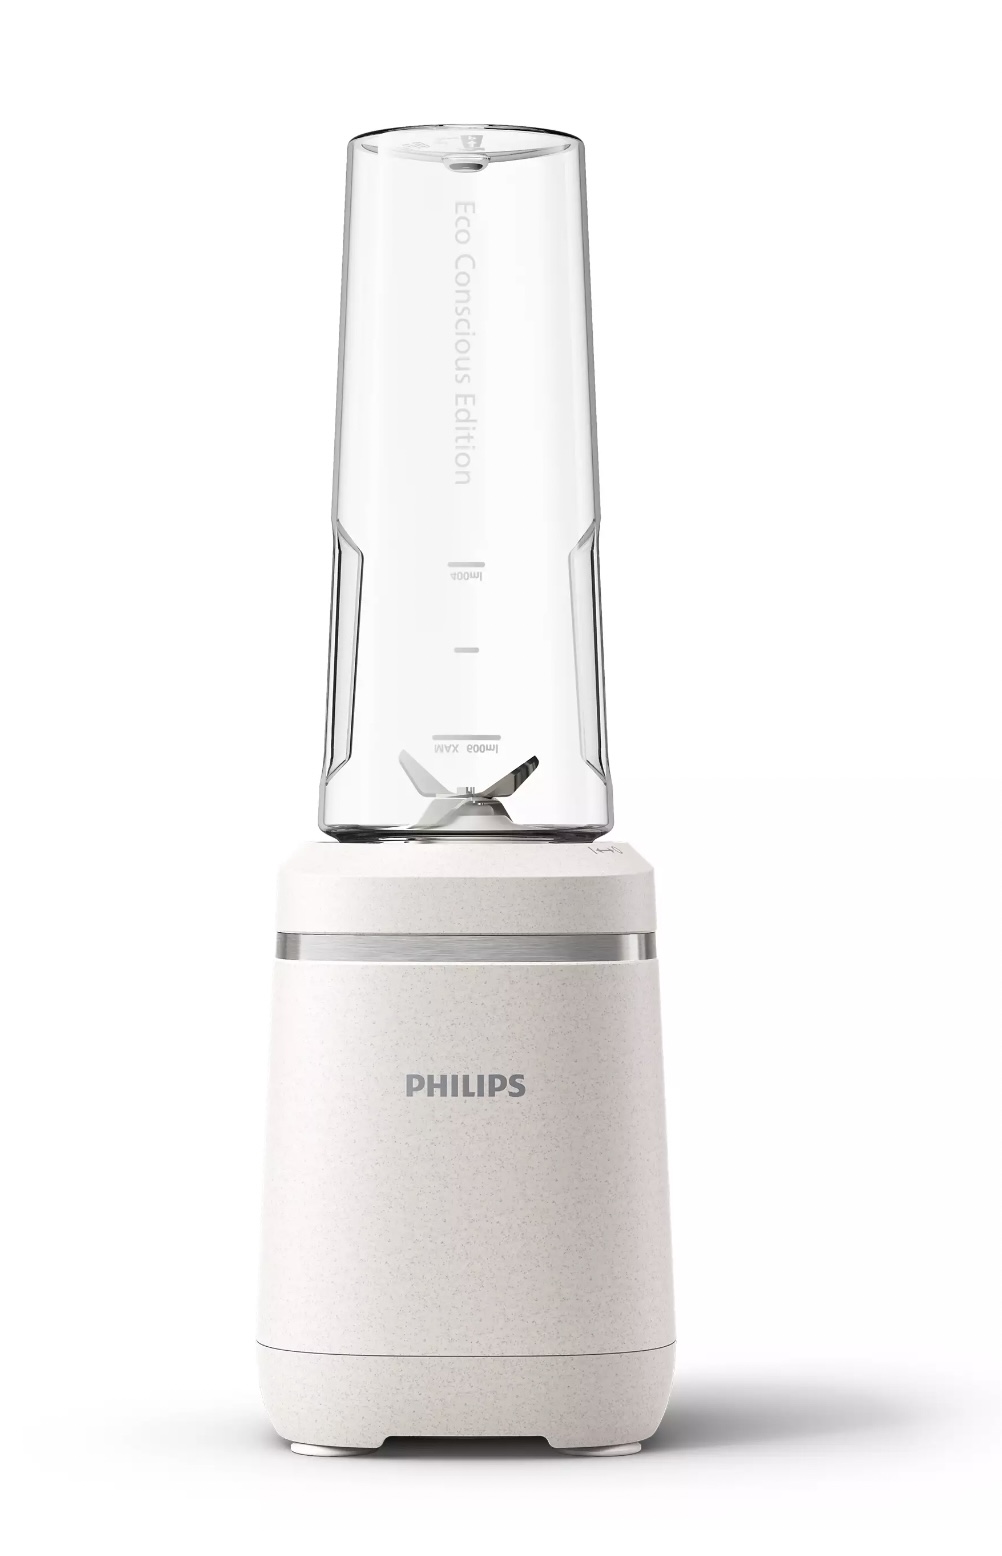 PHILIPS HR2500/00 blender